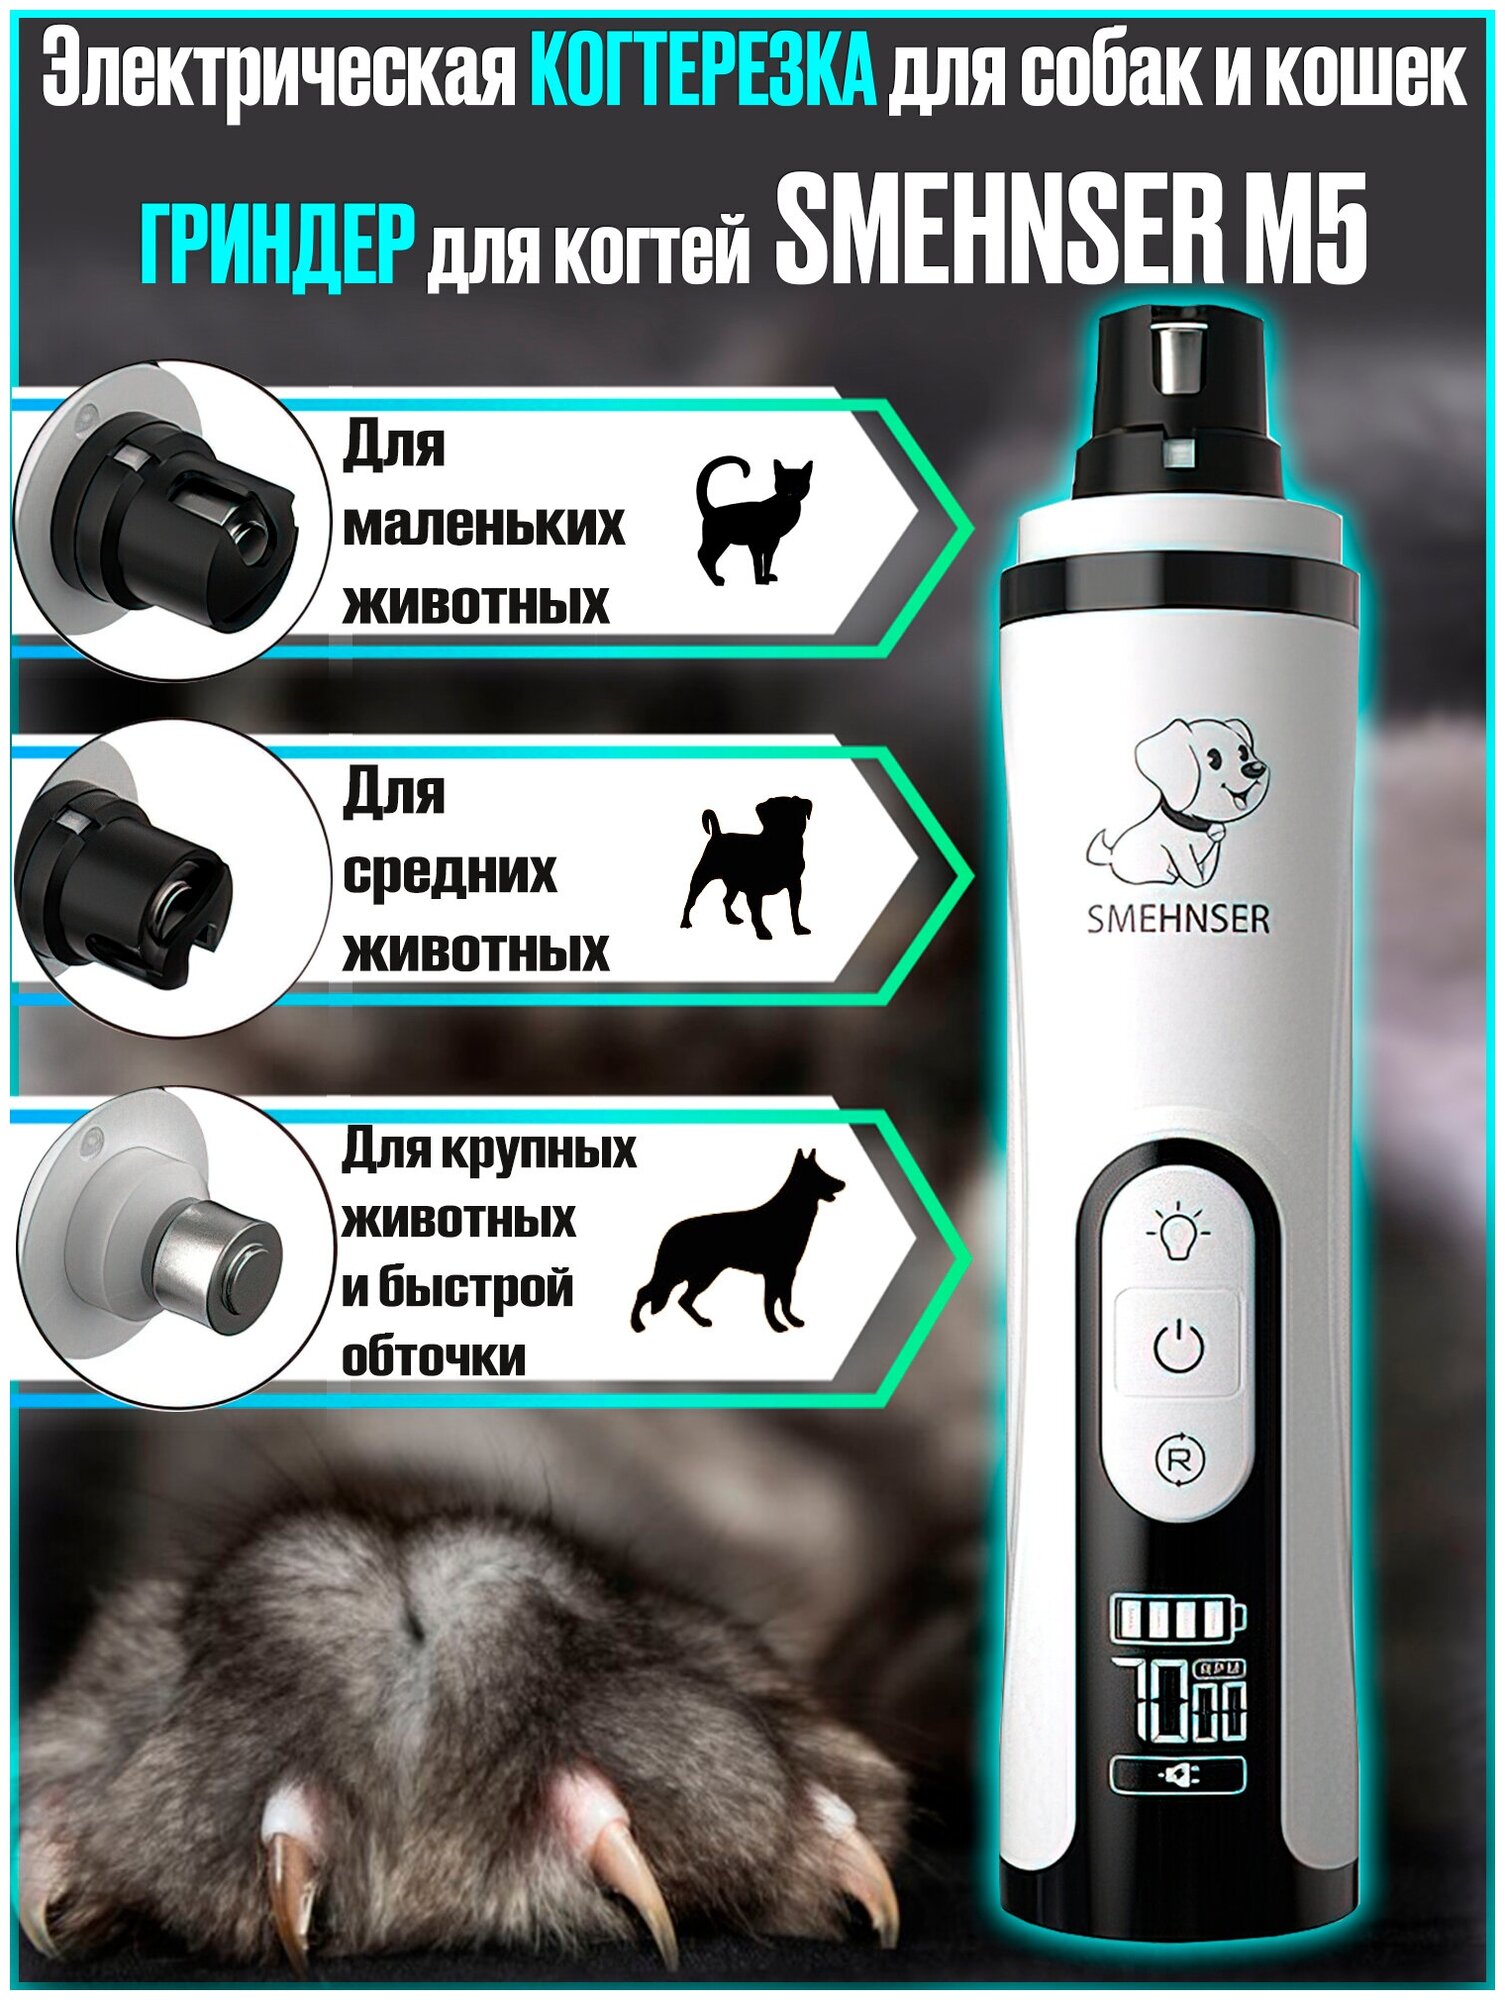 Электрическая когтерезка для собак и кошек, гриндер для когтей животных SMEHNSER M5